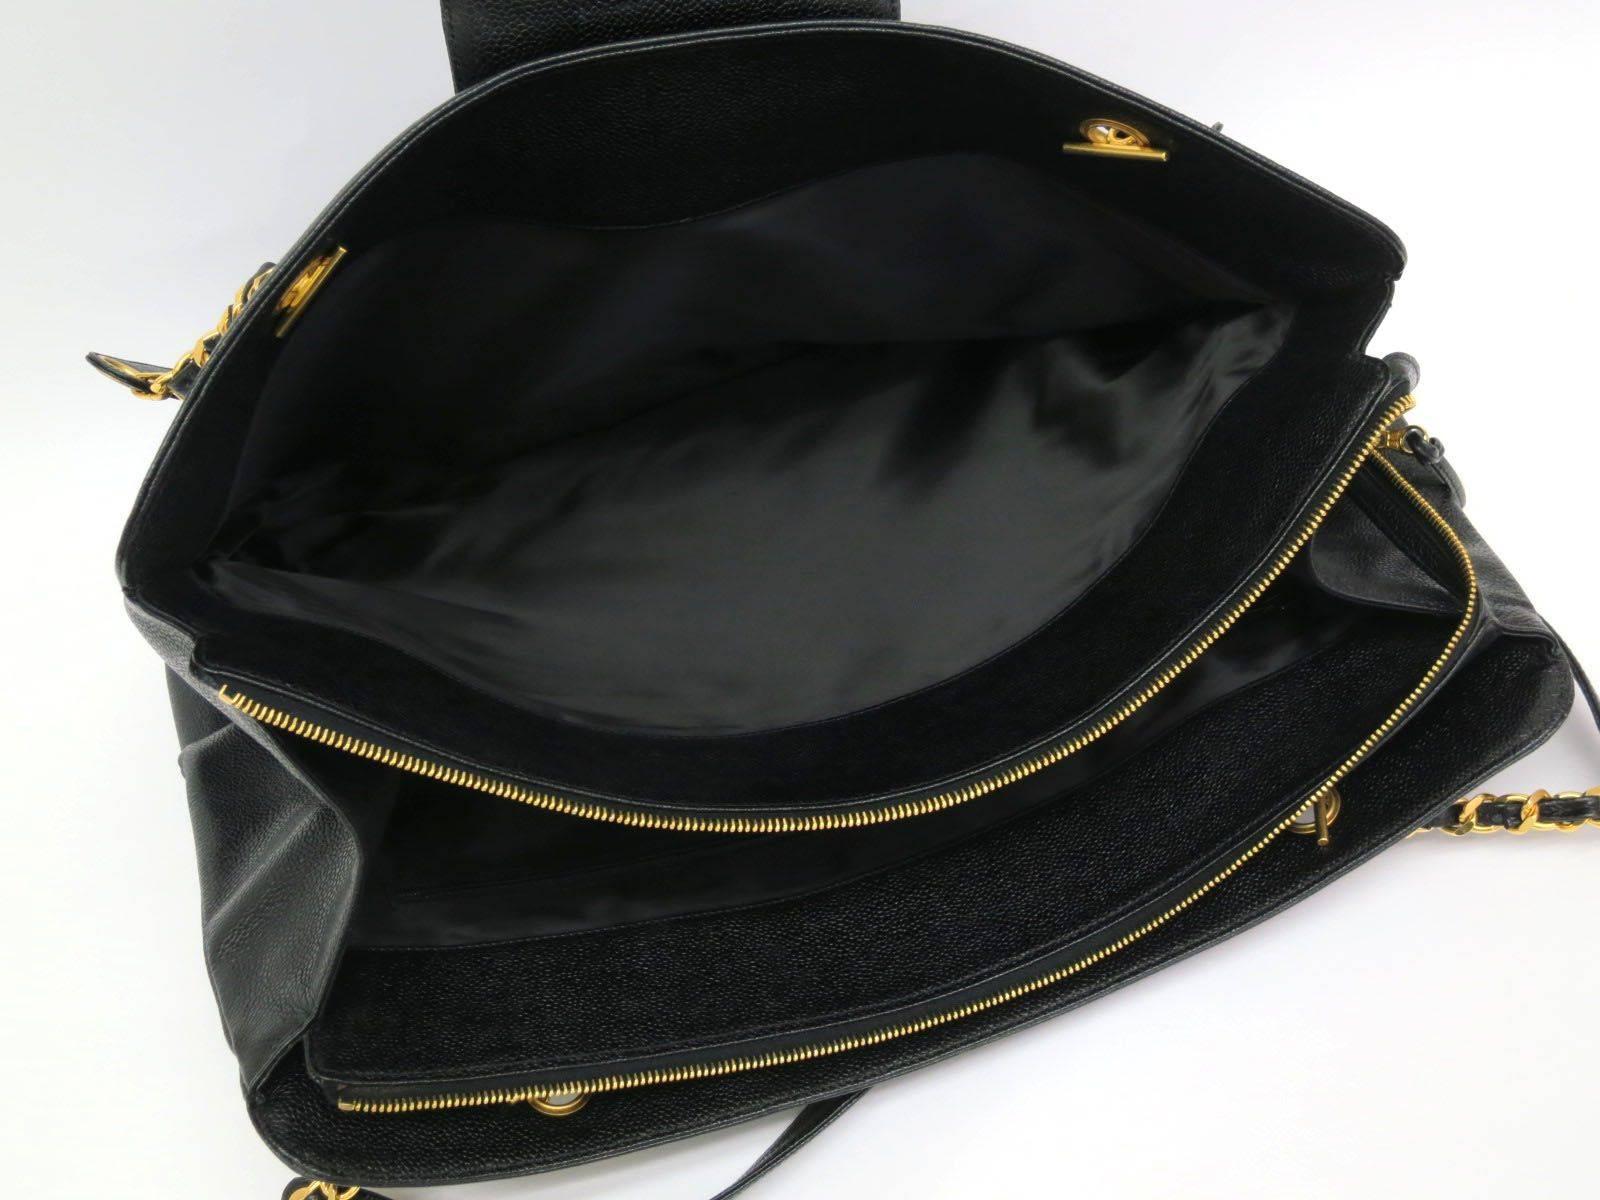 Chanel Black Caviar Leather Large Overnight Weekender Travel Tote Shoulder Bag 1